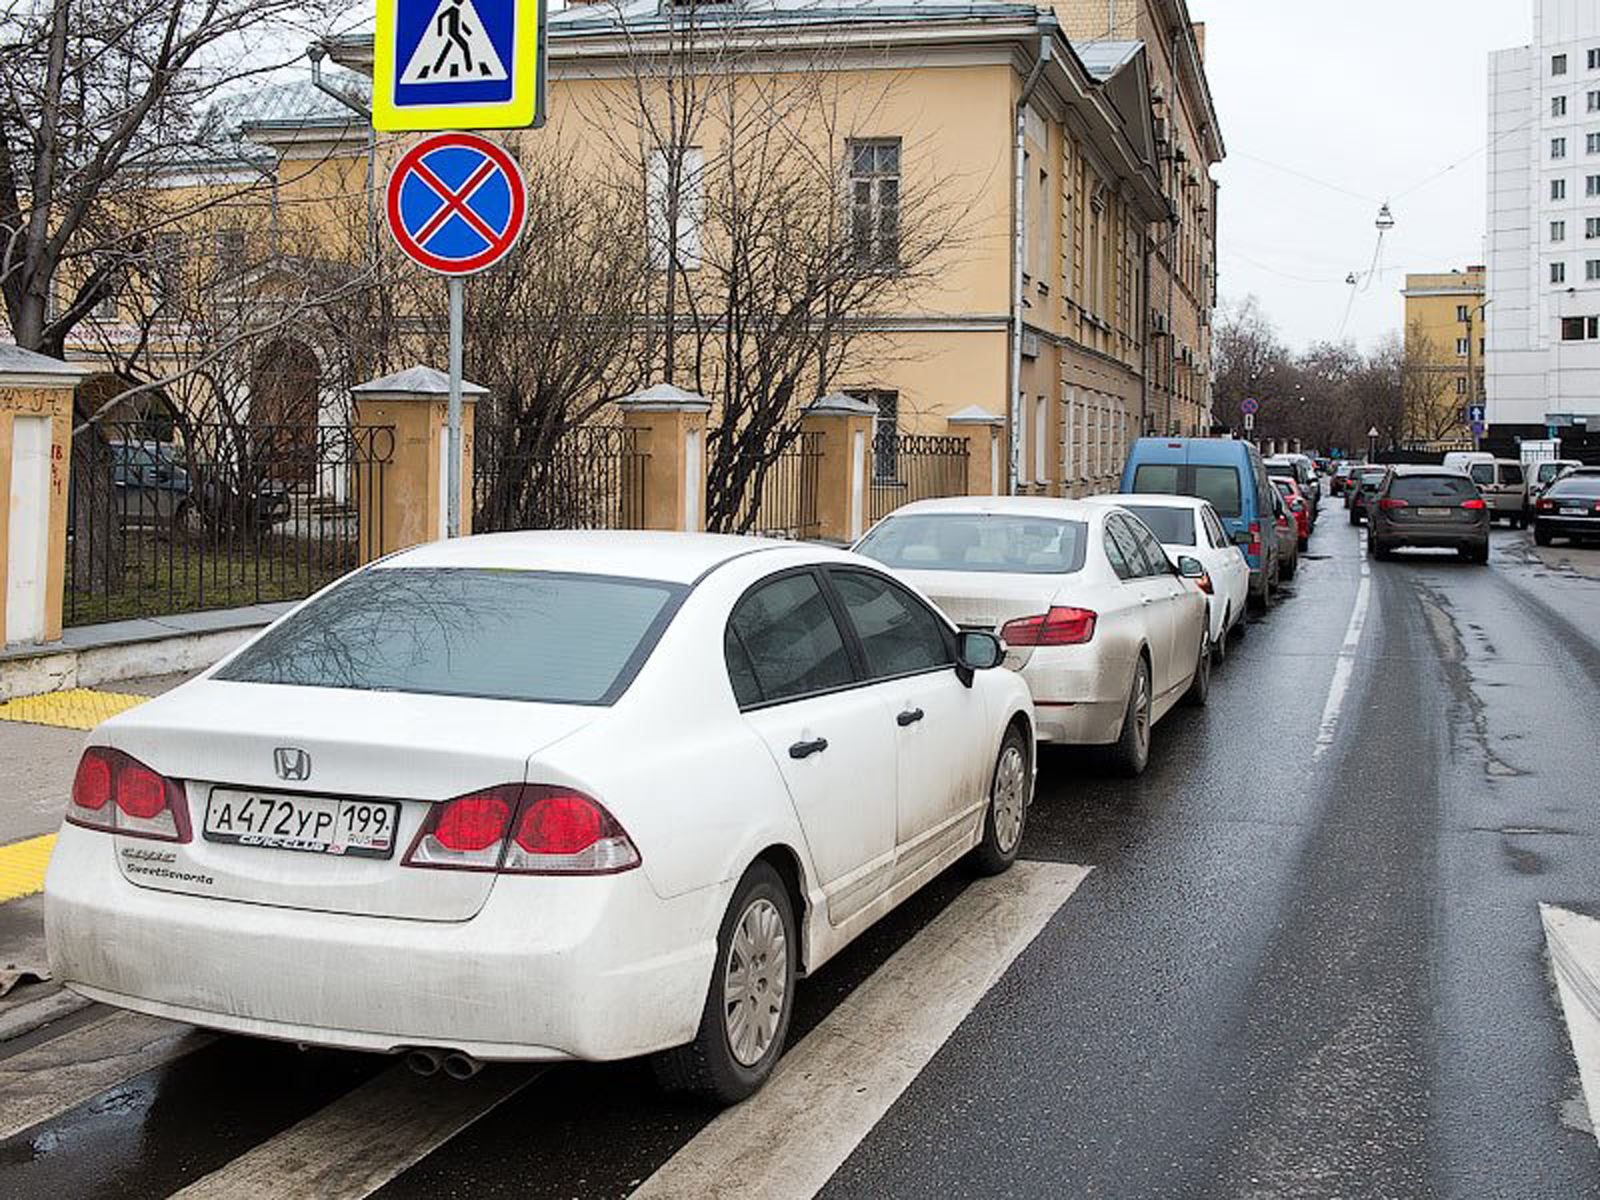 “بالصور” نظرة على السيارات الأكثر انتشارا في العاصمة الروسية موسكو